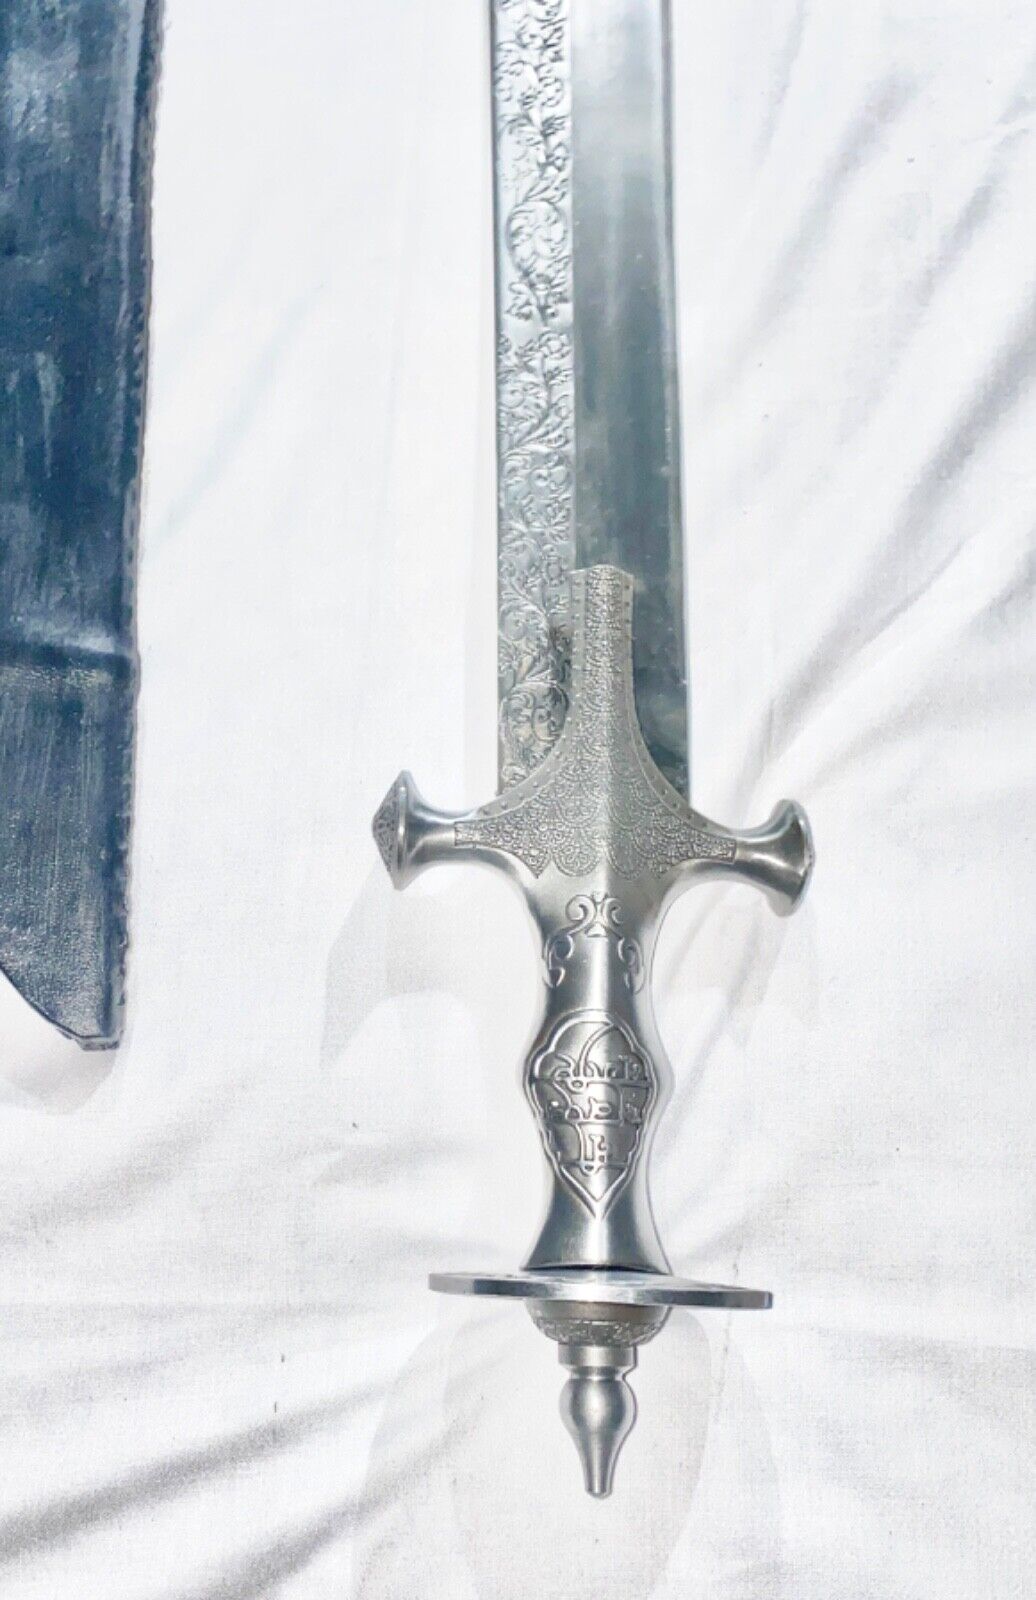 Sikh Khanda, Kamani blade (3feet) Sikh Sword, Sikh Dagger, Sikh Kirpan